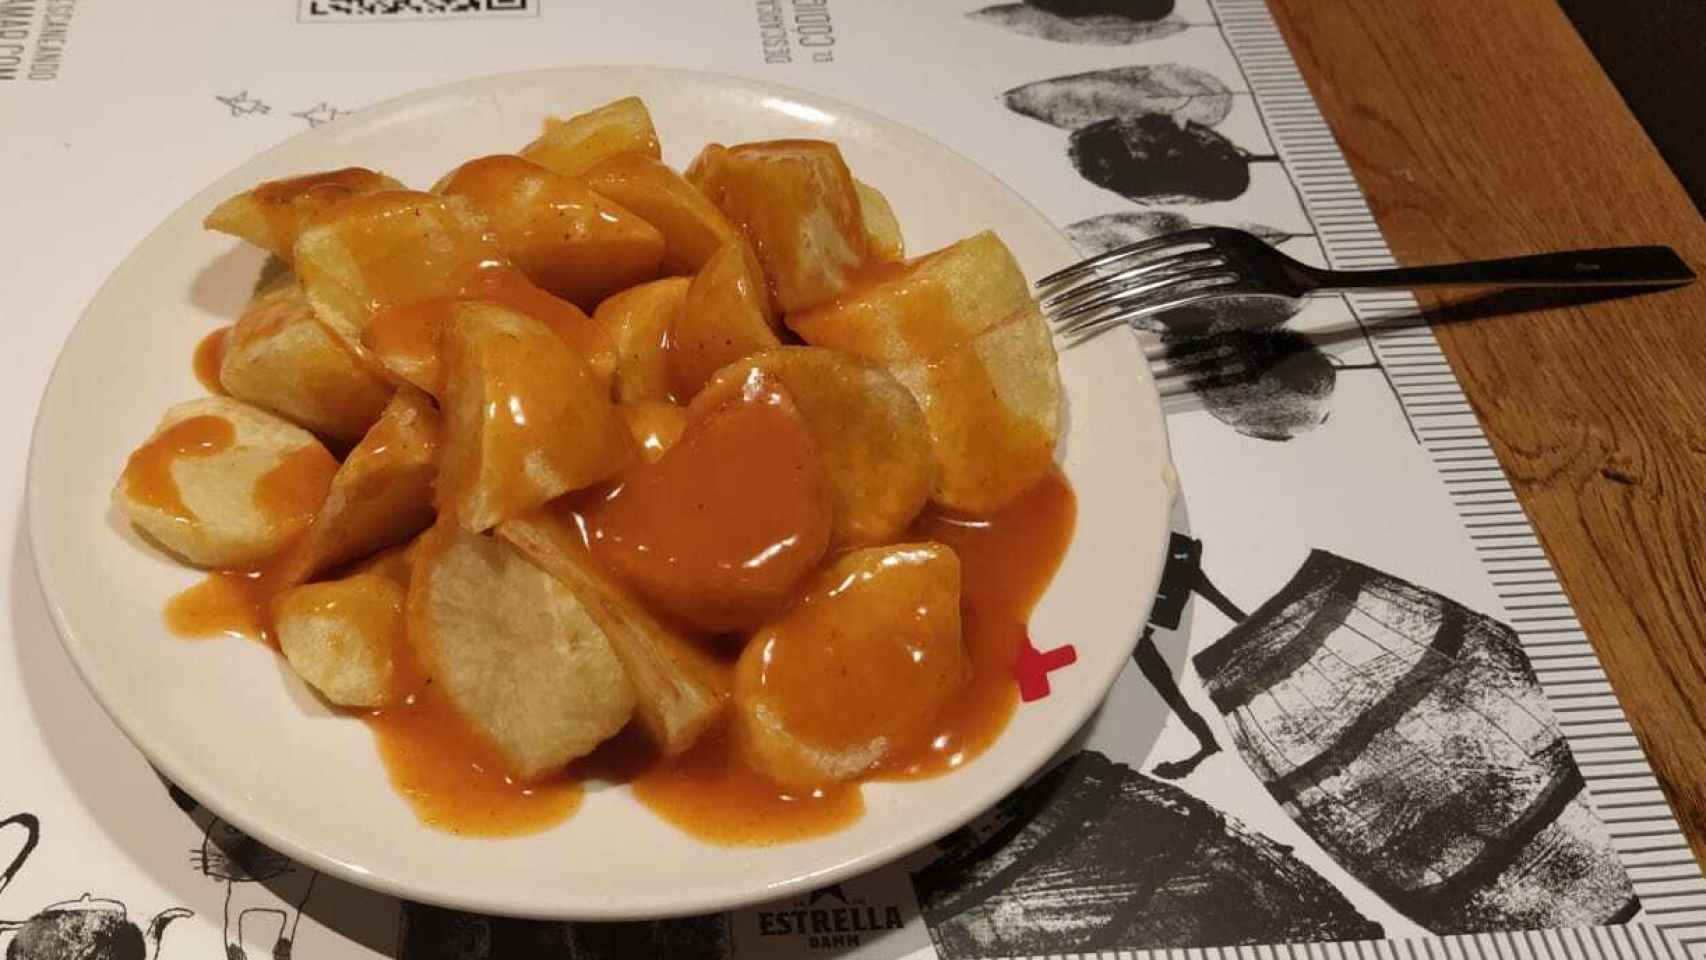 La ración de patatas bravas de Docamar, uno de los restaurantes visitados.